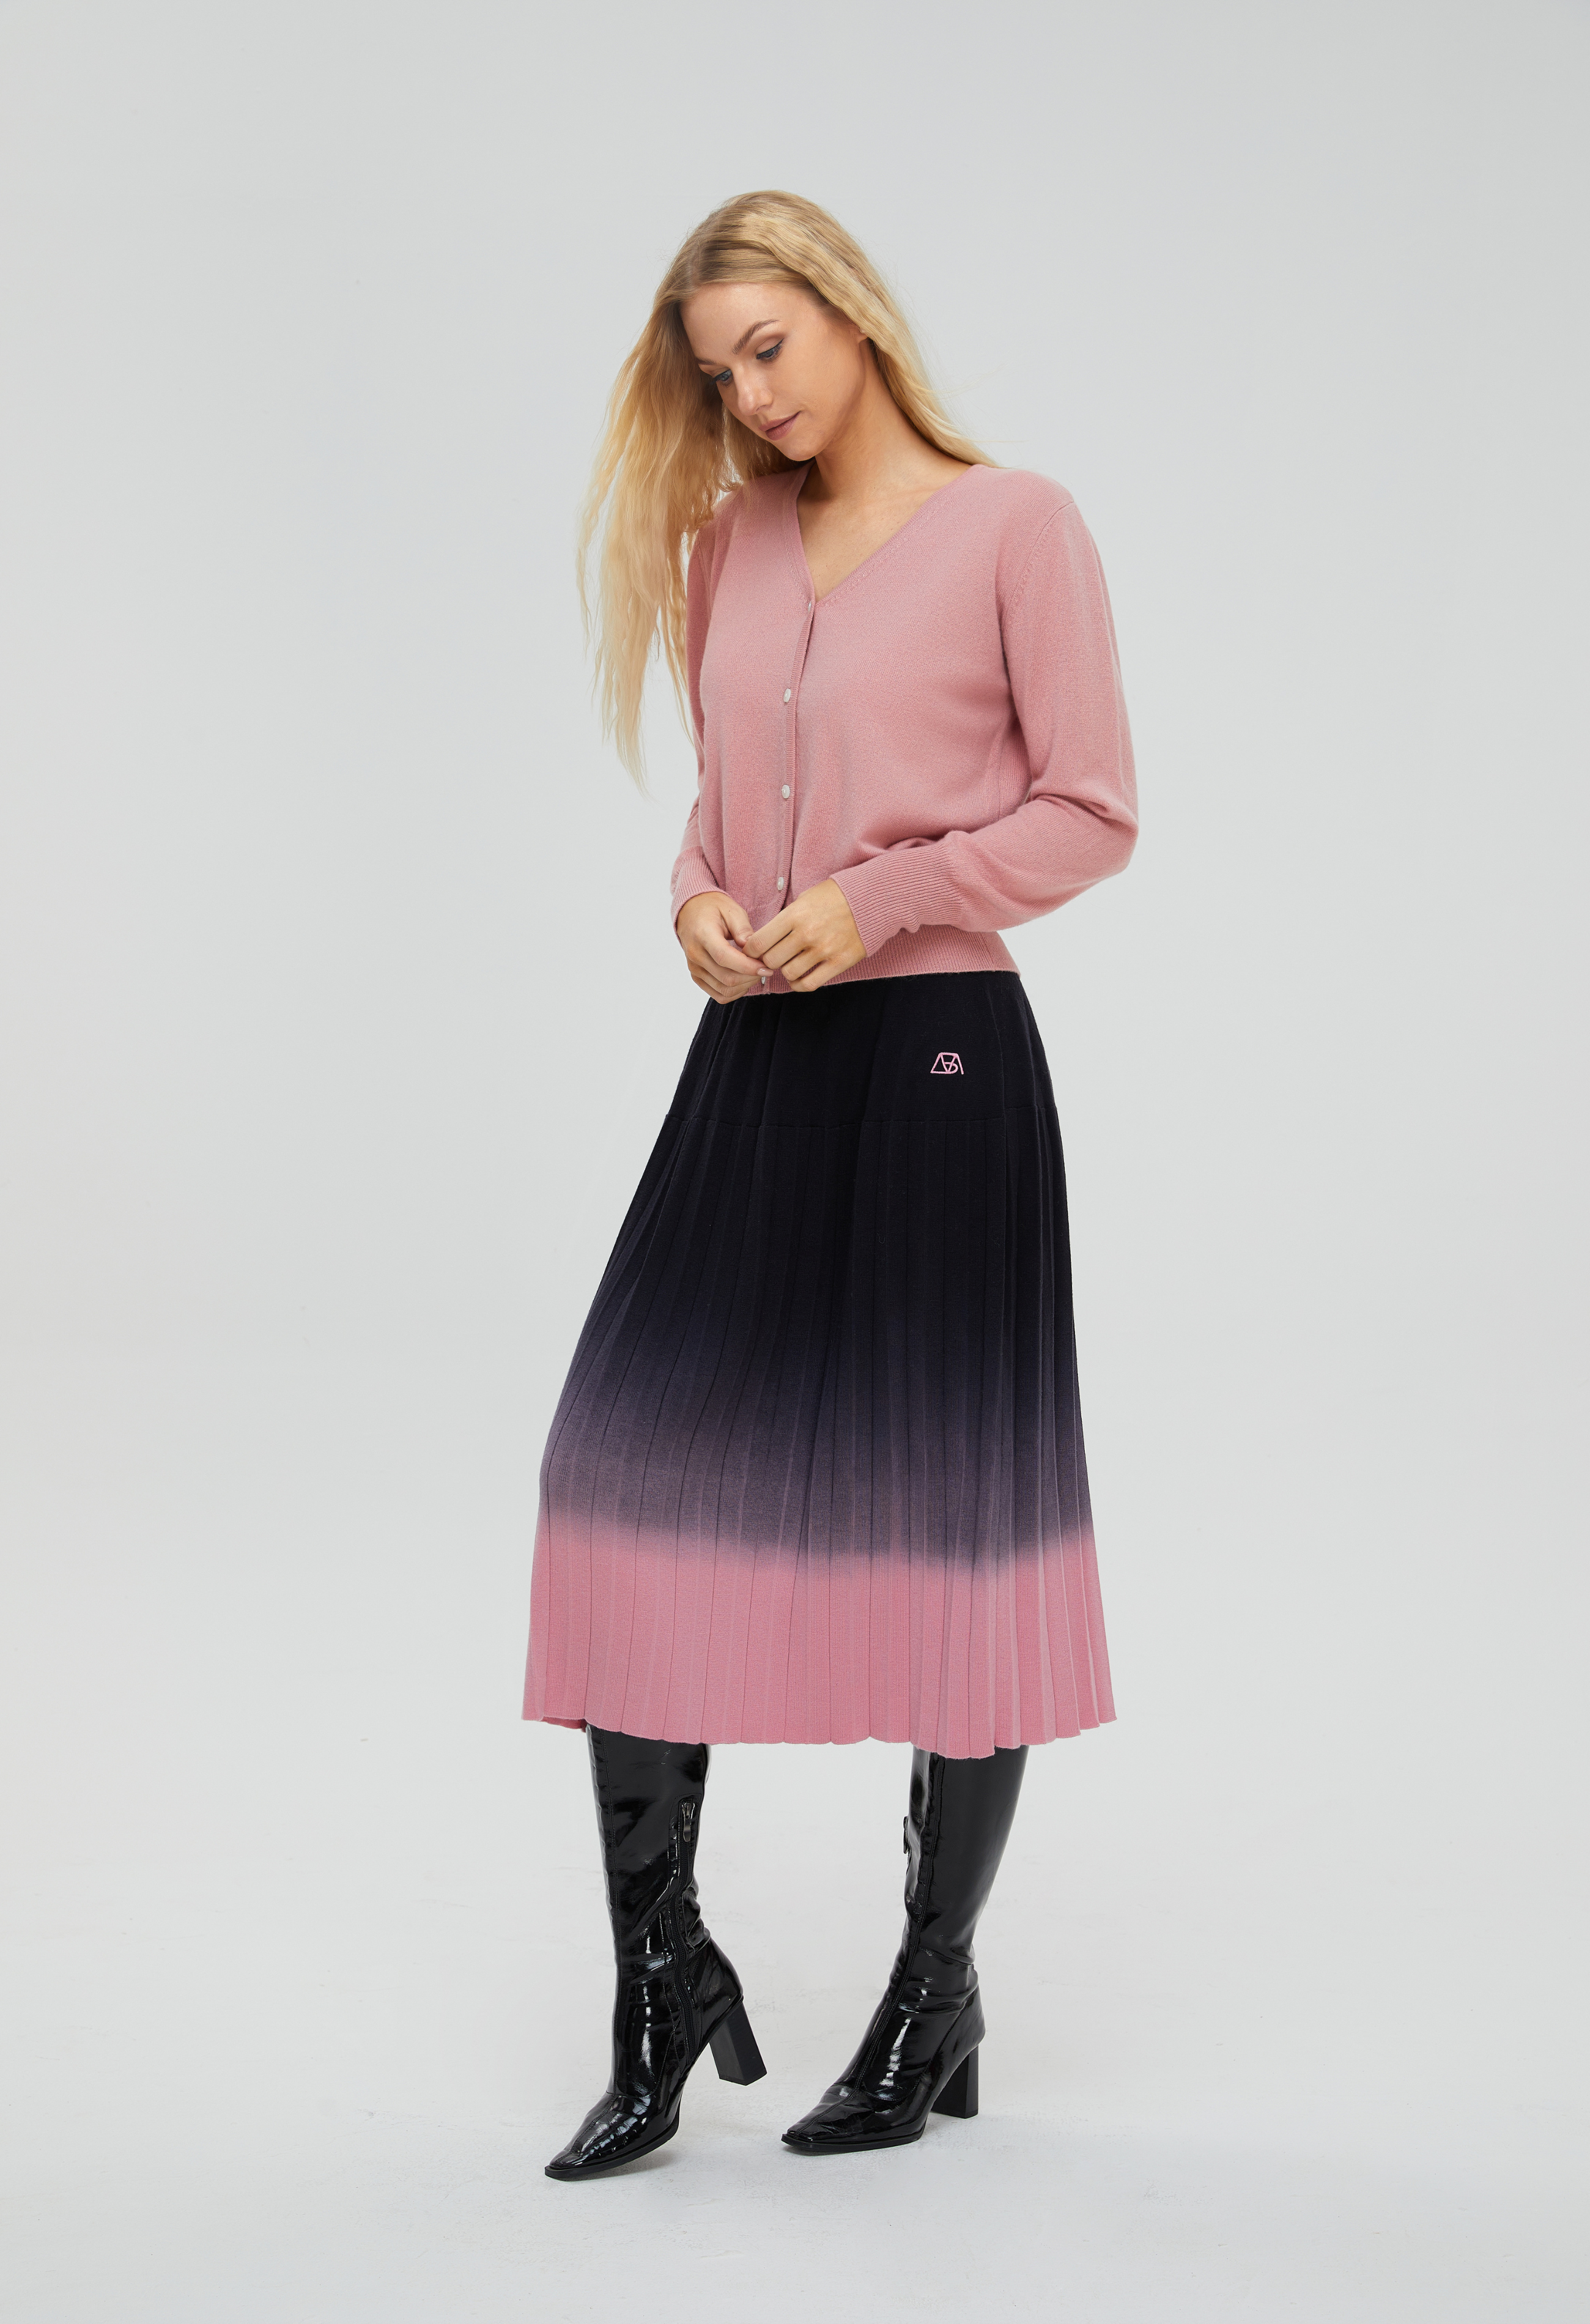 Women's Bottoms, Merino Wool, Gradient Skirt